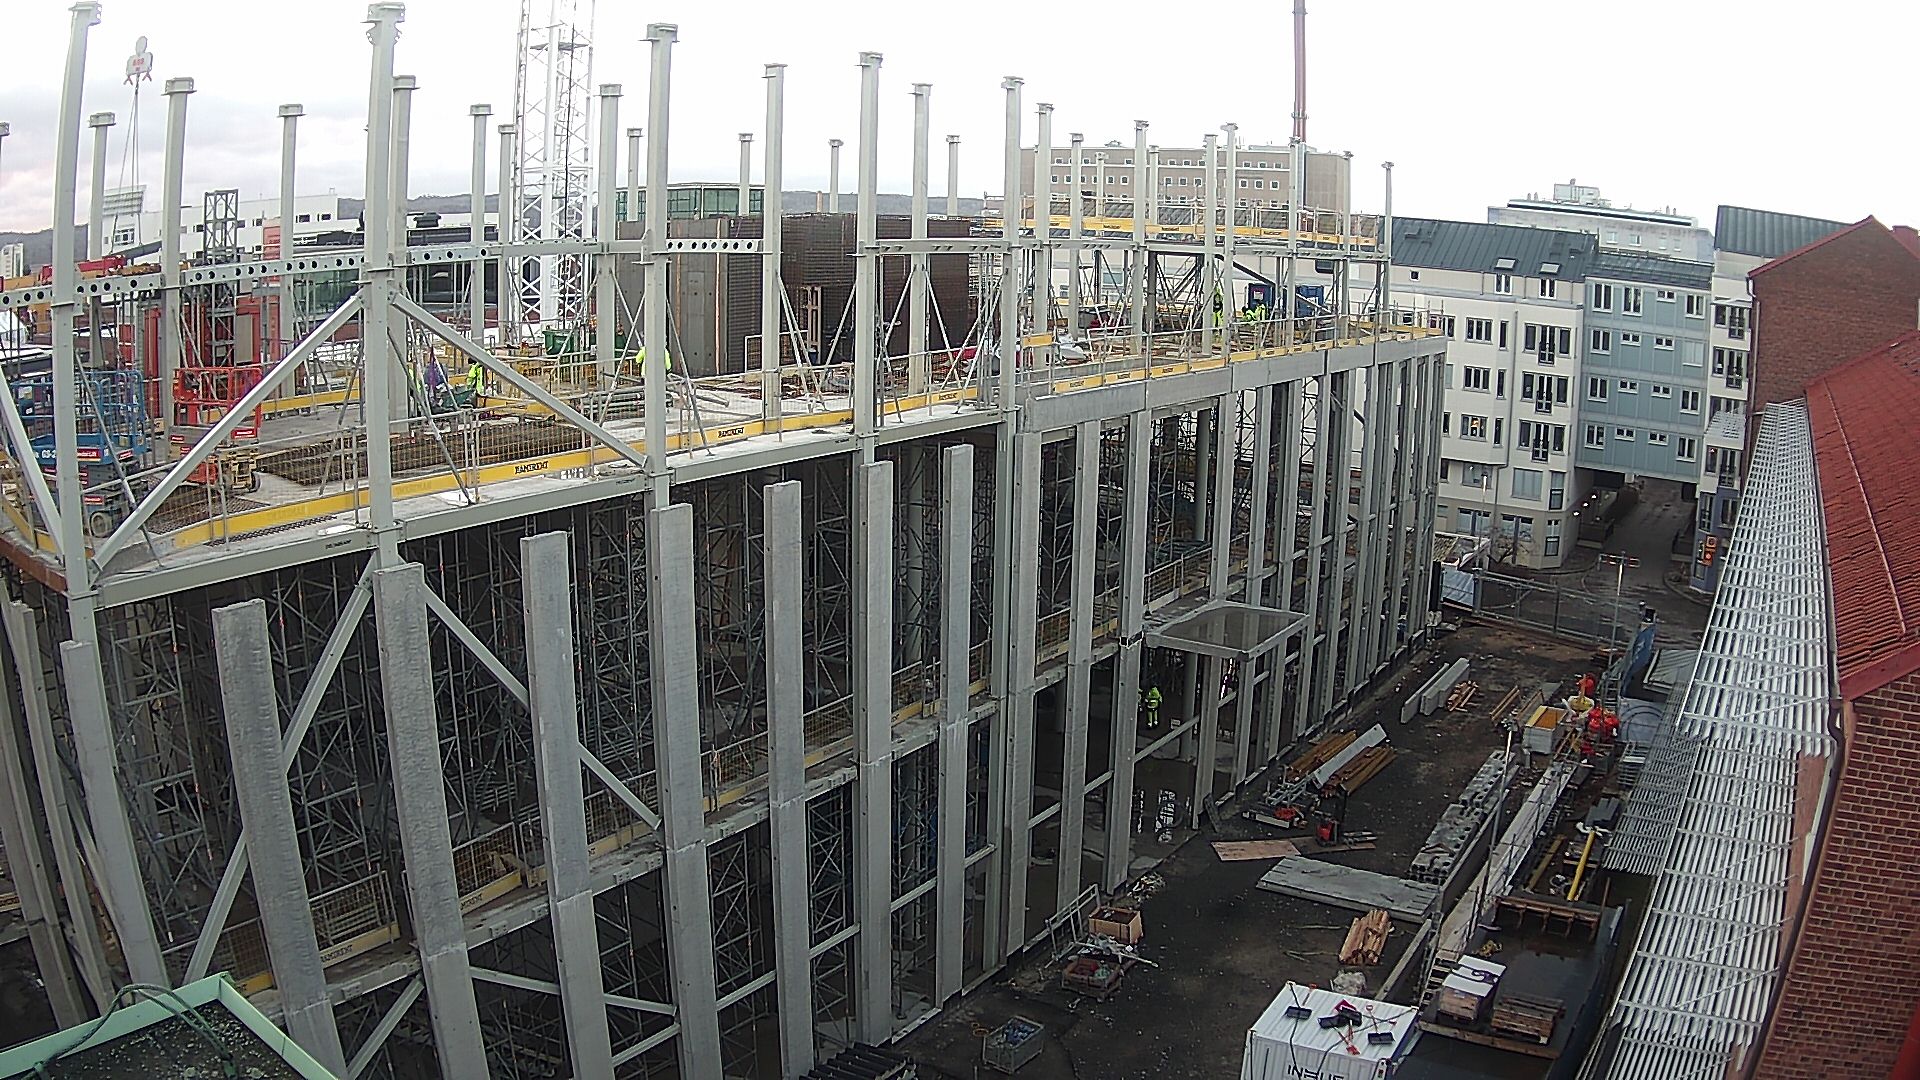 Byggarbetsplatsen där stommen monteras och är uppe på våning 4, sett från Science Park House.